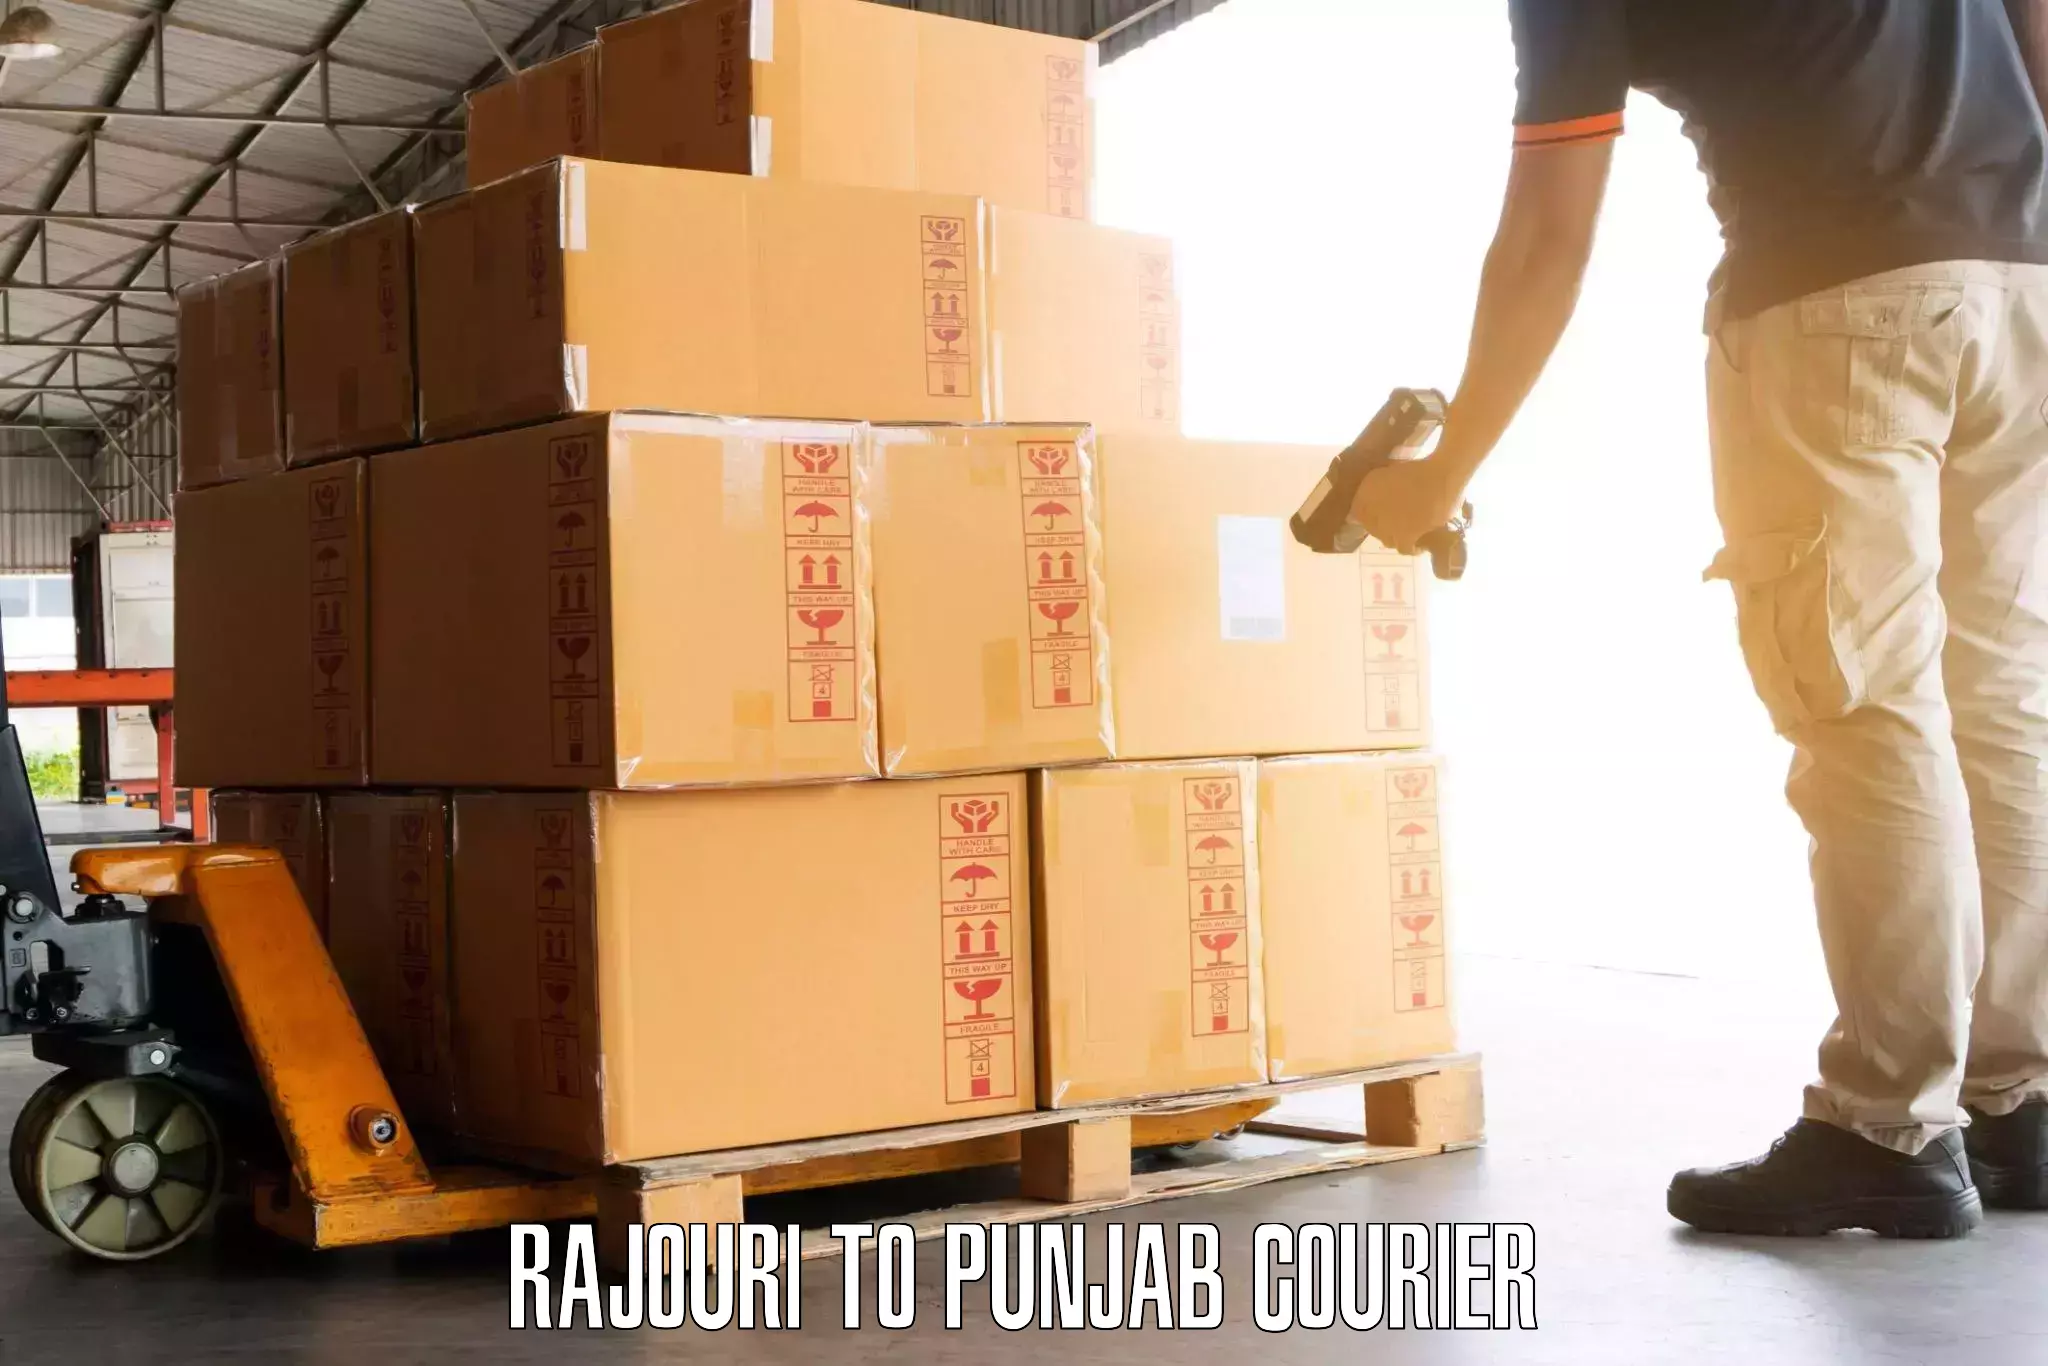 Door-to-door baggage service Rajouri to Punjab